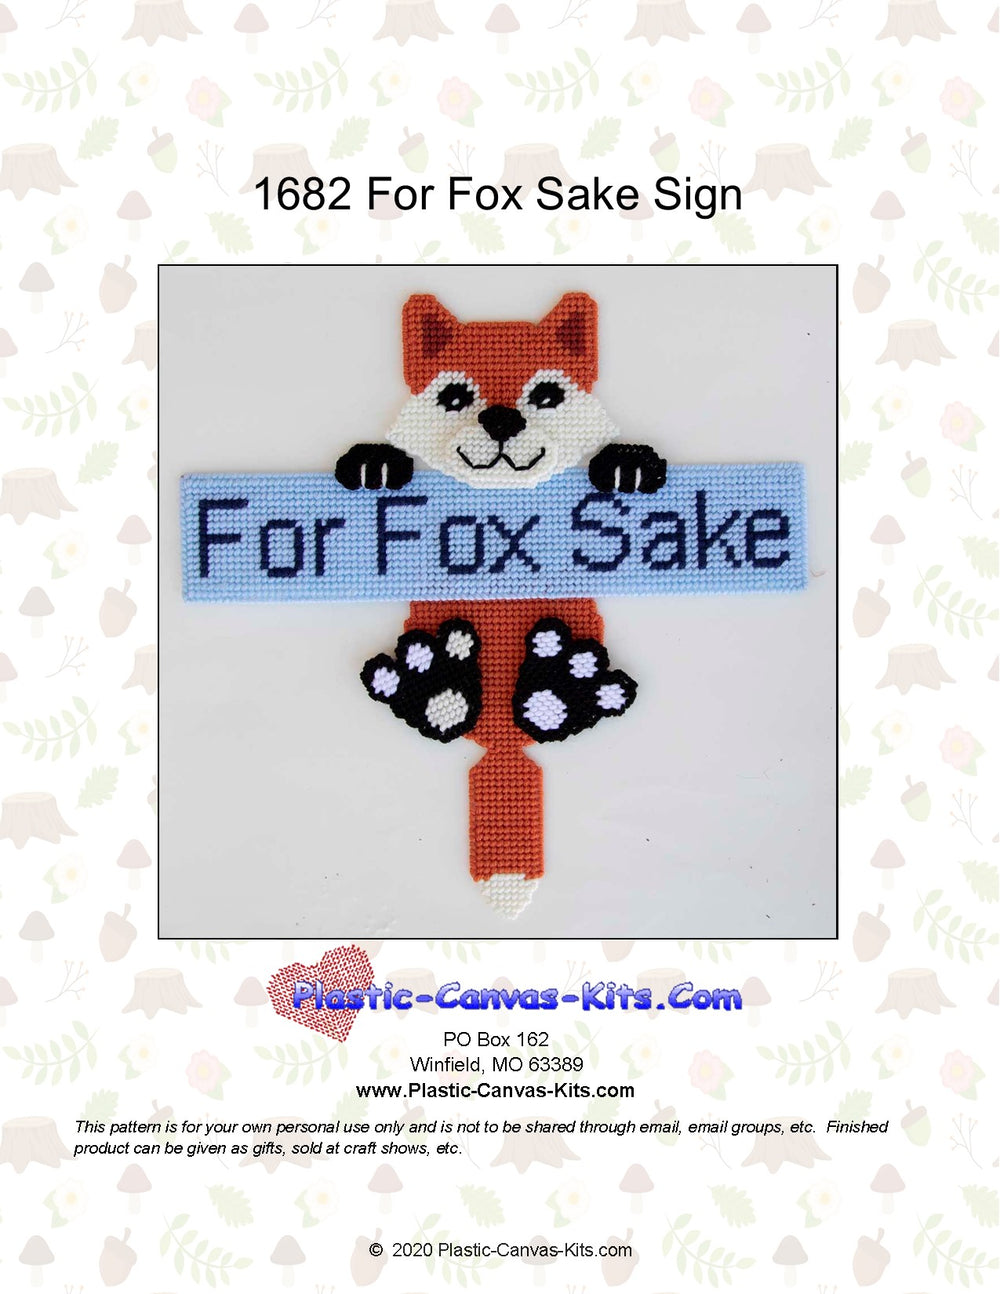 For Fox Sake Sign